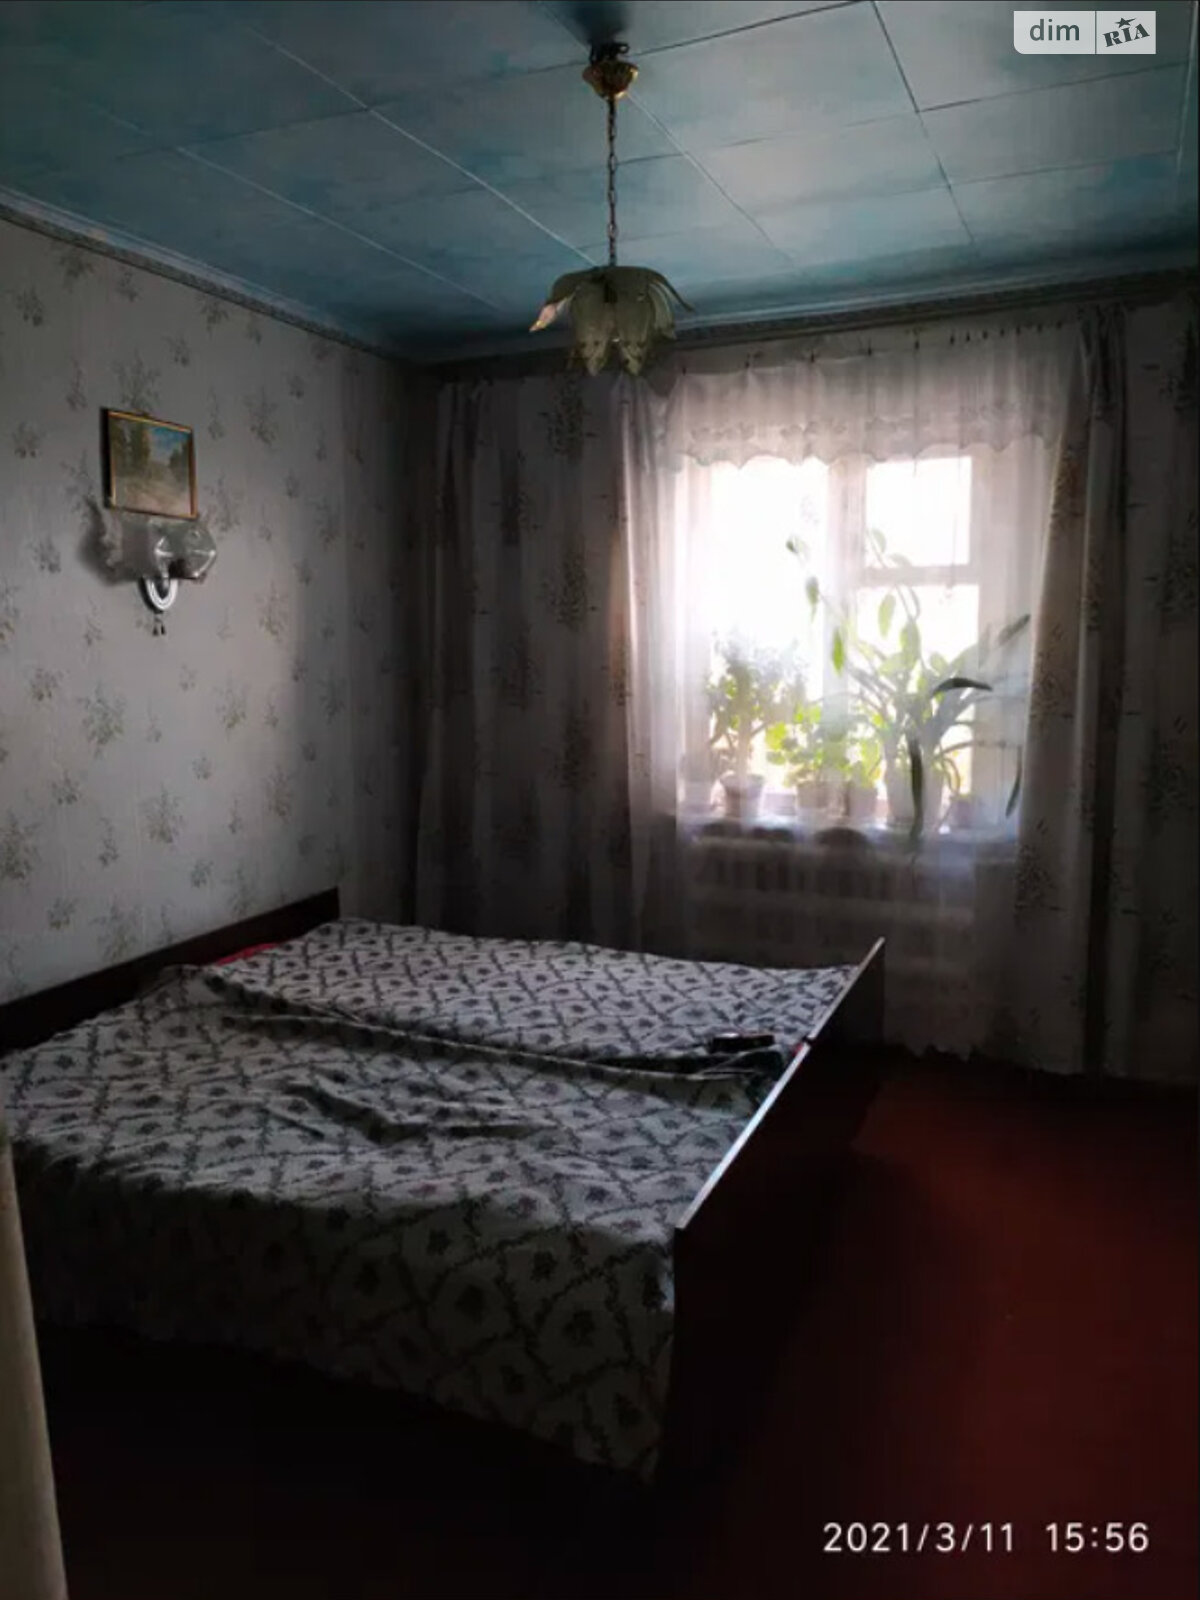 Продаж частини будинку в Новомосковську, р-н Плодопитомника, 3 кімнати фото 1